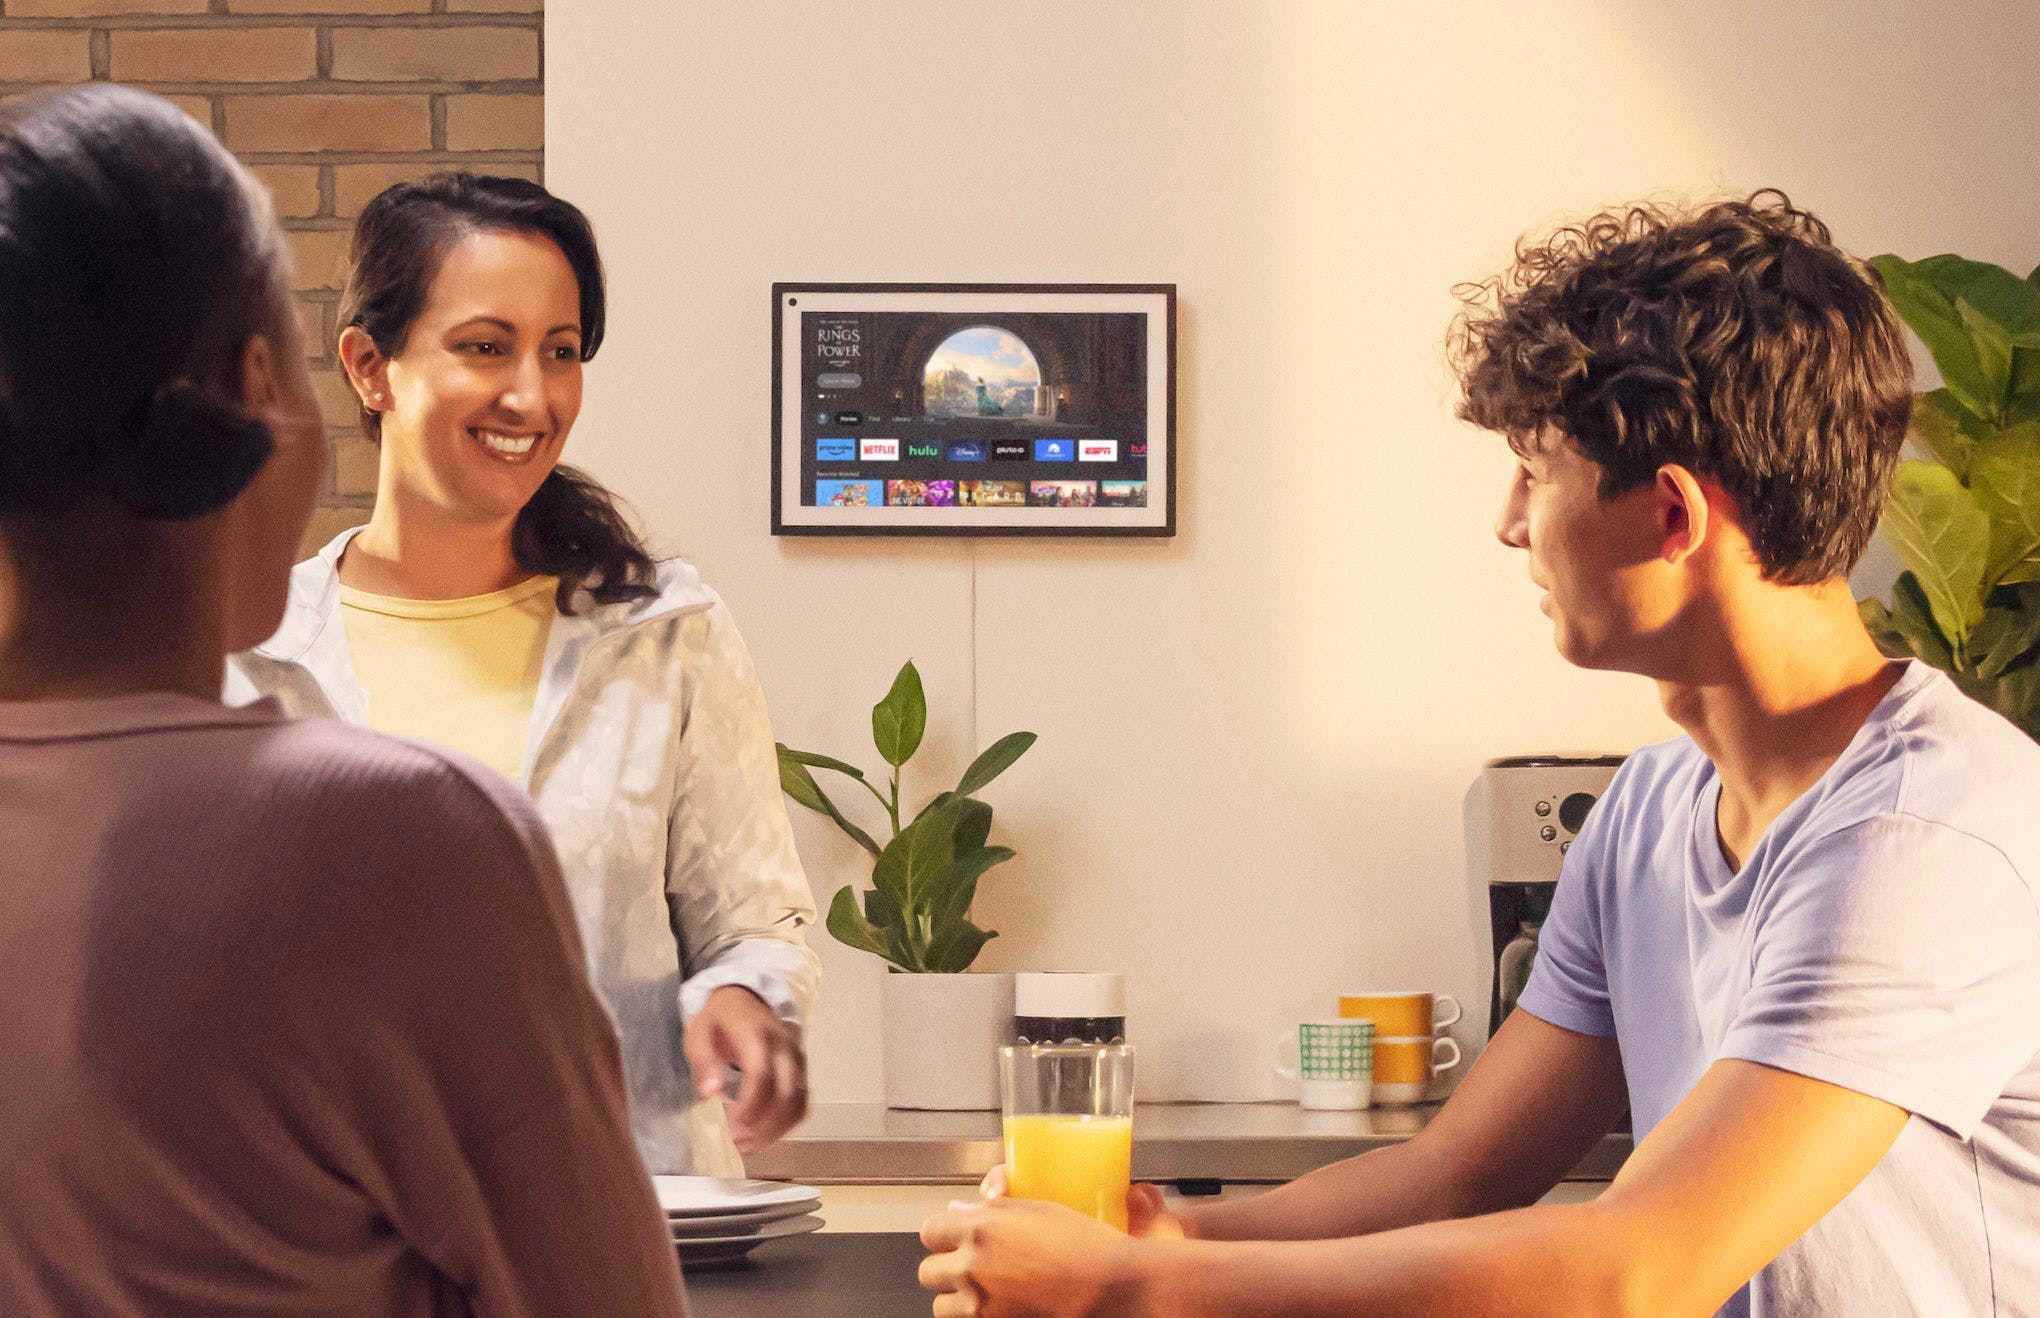 Amazon'un Fire TV işletim sistemini çalıştıran bir duvara monte edilmiş bir Echo Show 15'in görüntüsü.  İnsanlar ön planda sohbet ediyor.